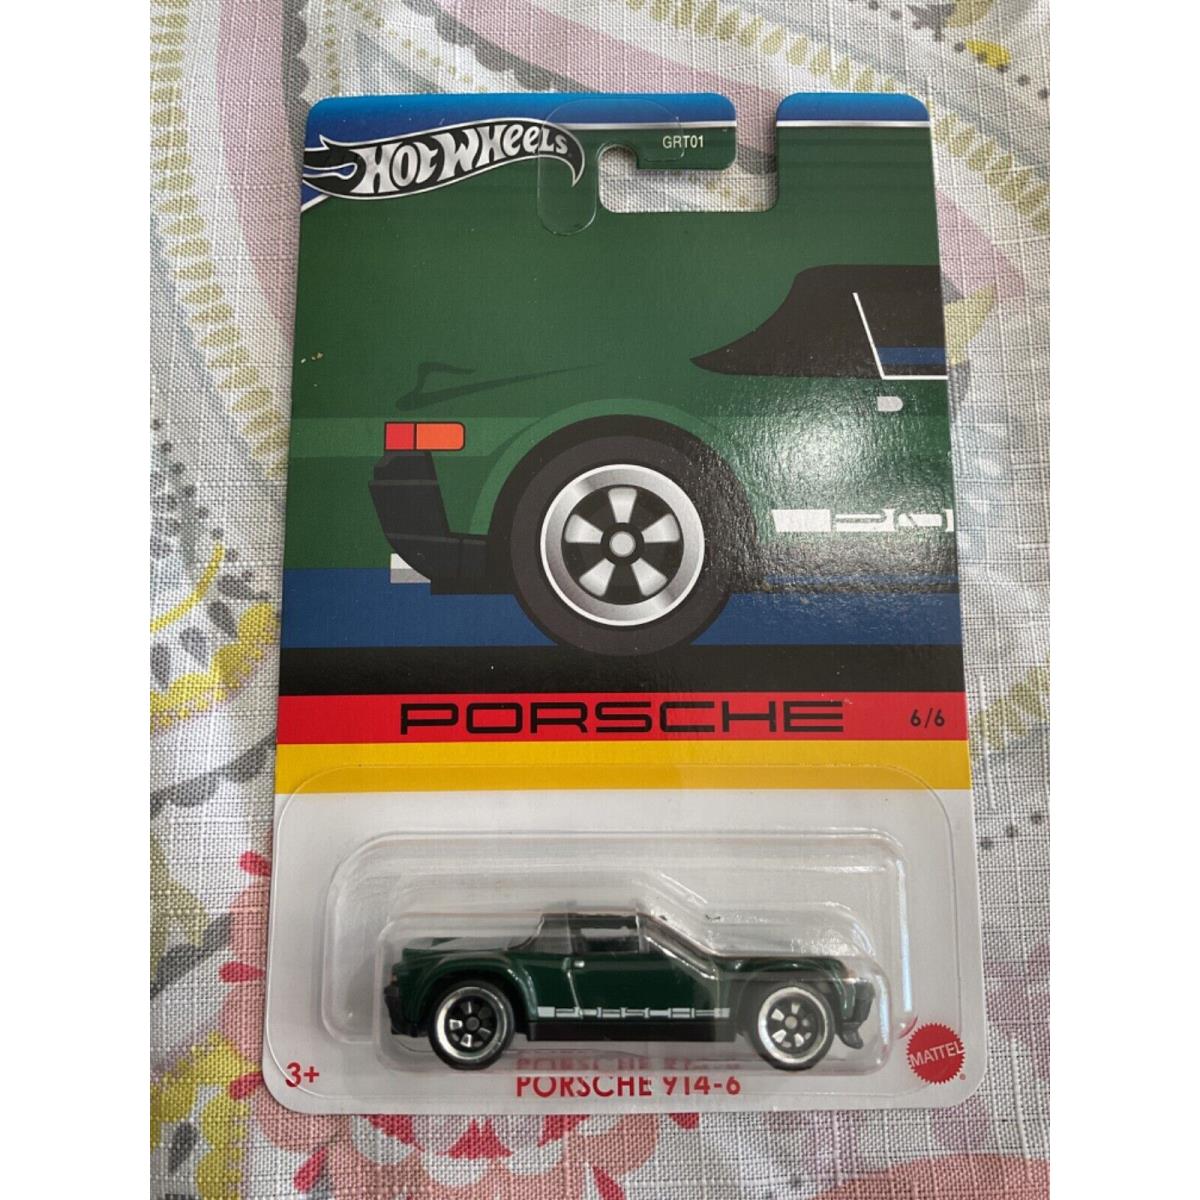 2023 Hot Wheels Porsche 914-6 Walmart Exclusive Green 6/6 Chase